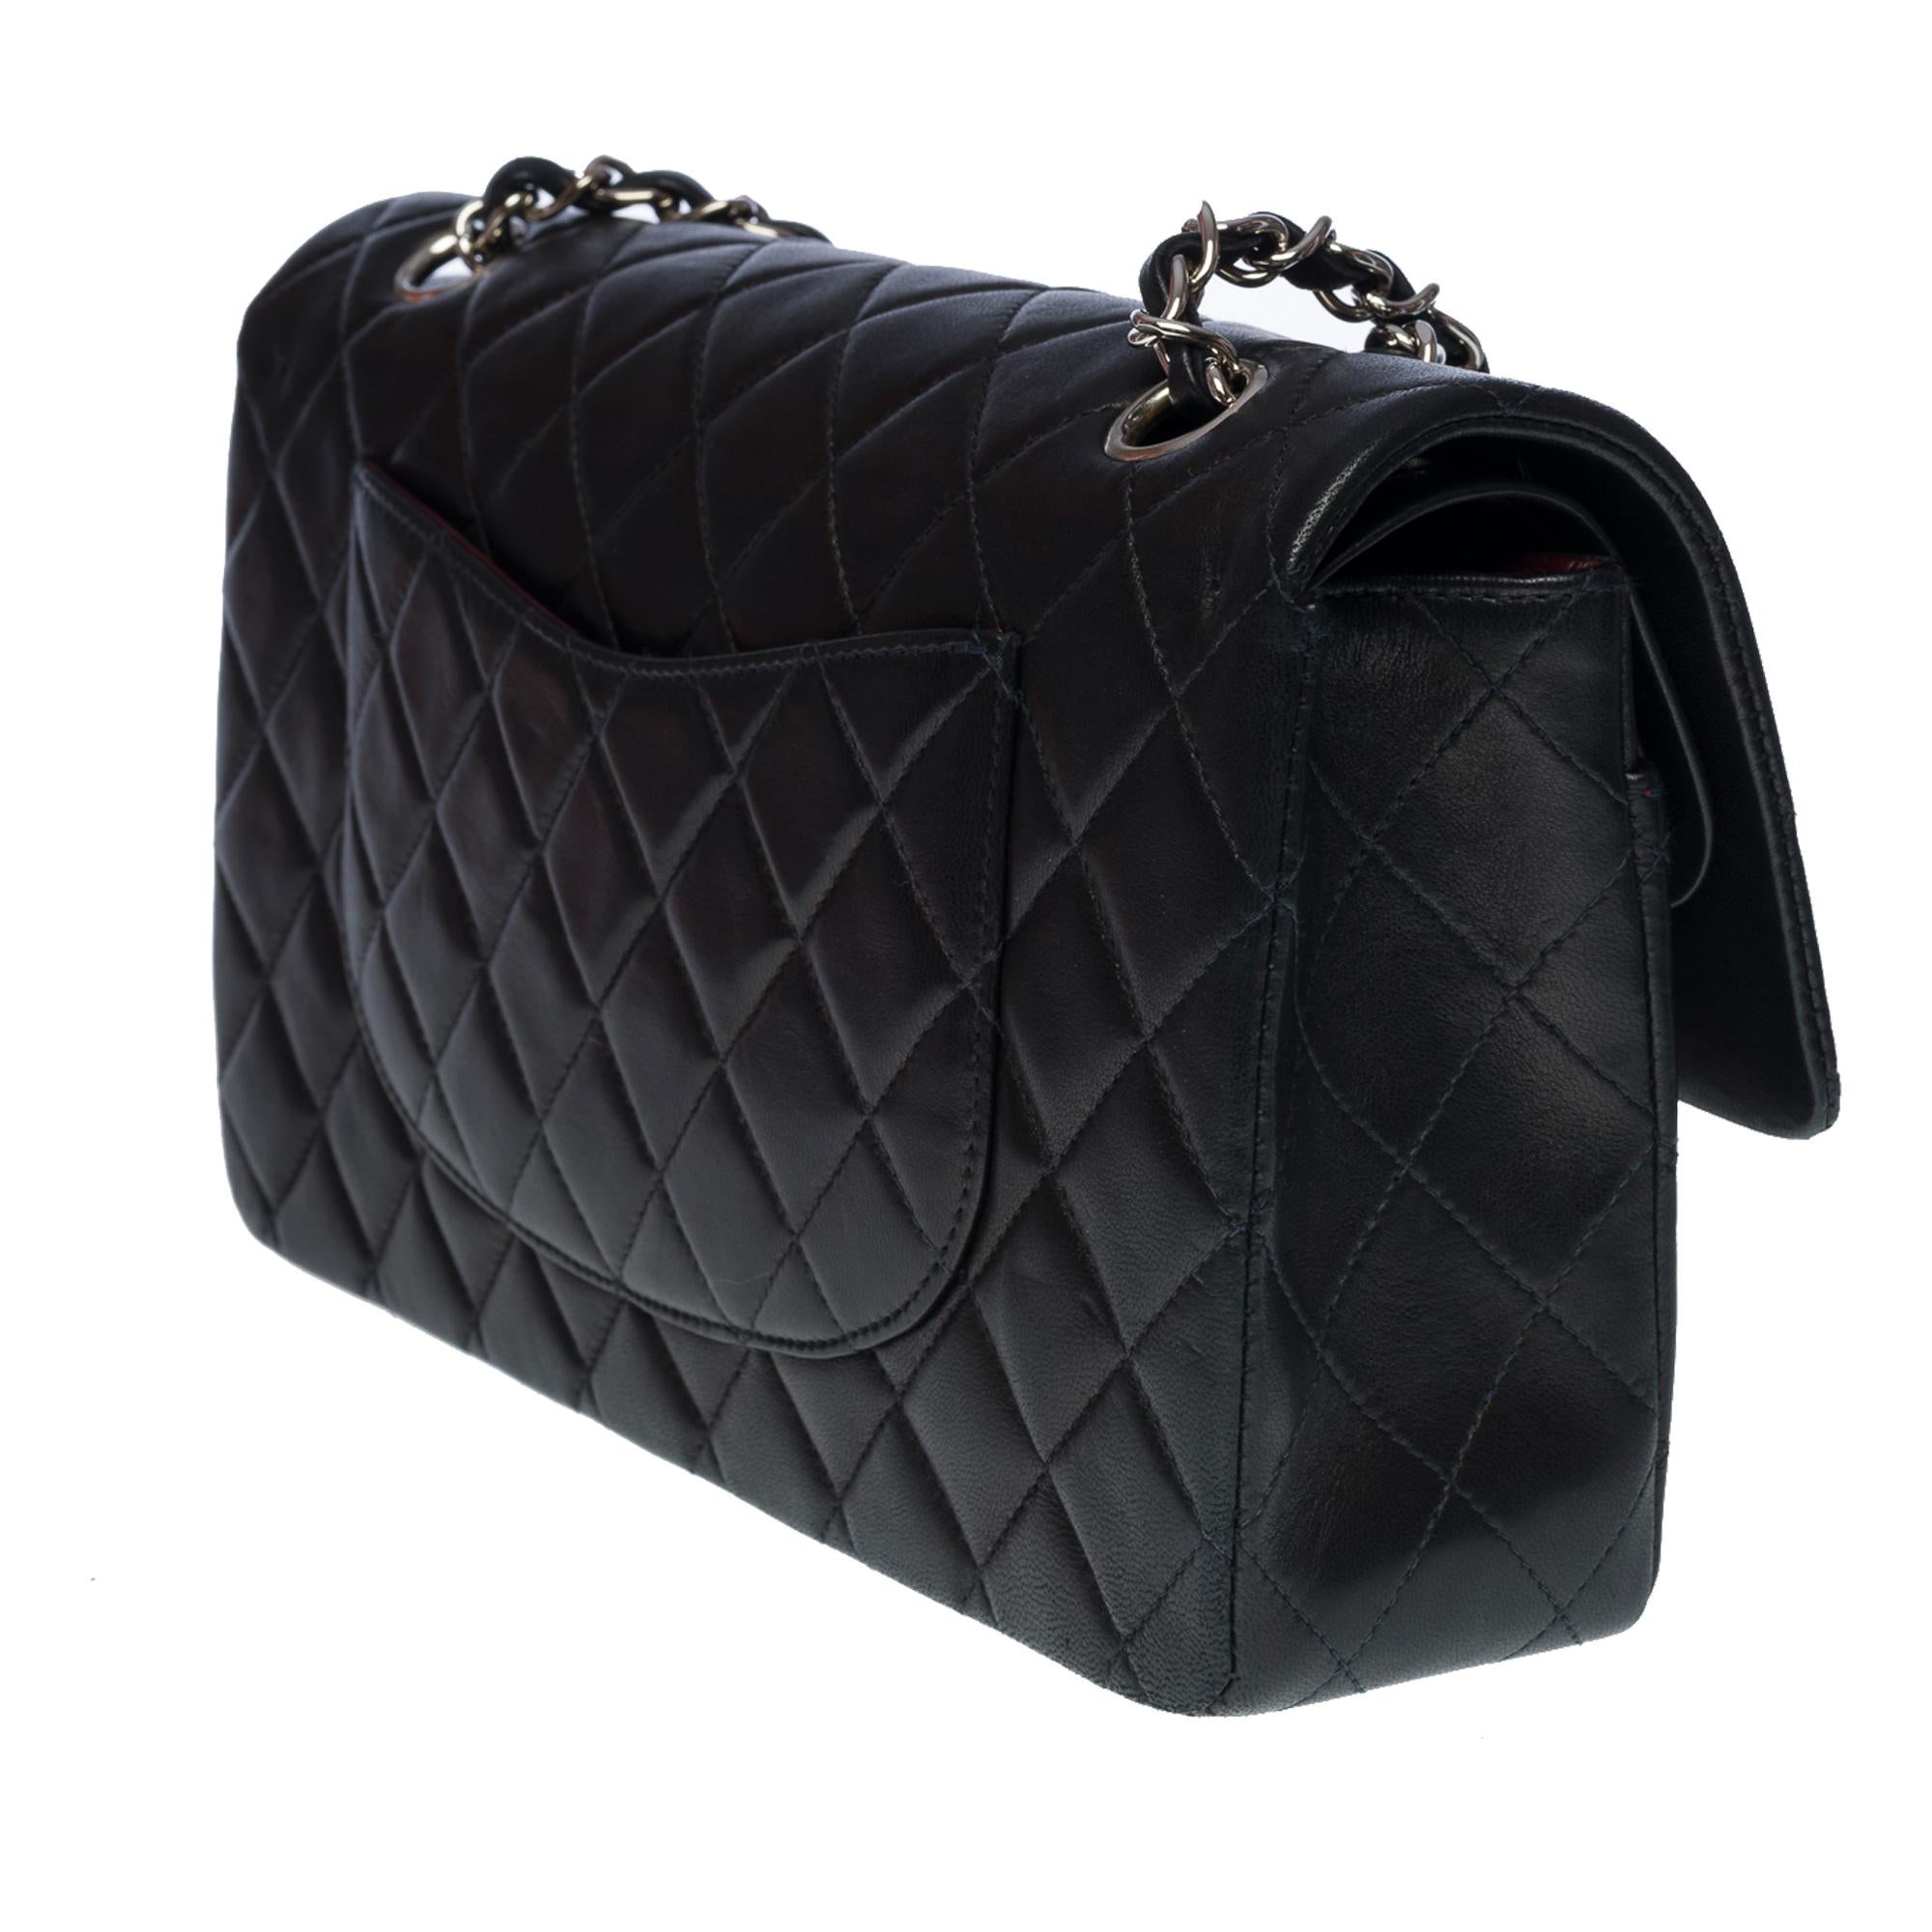 Women's Chanel Timeless Medium 25cm double flap shoulder bag in black lambskin, SHW